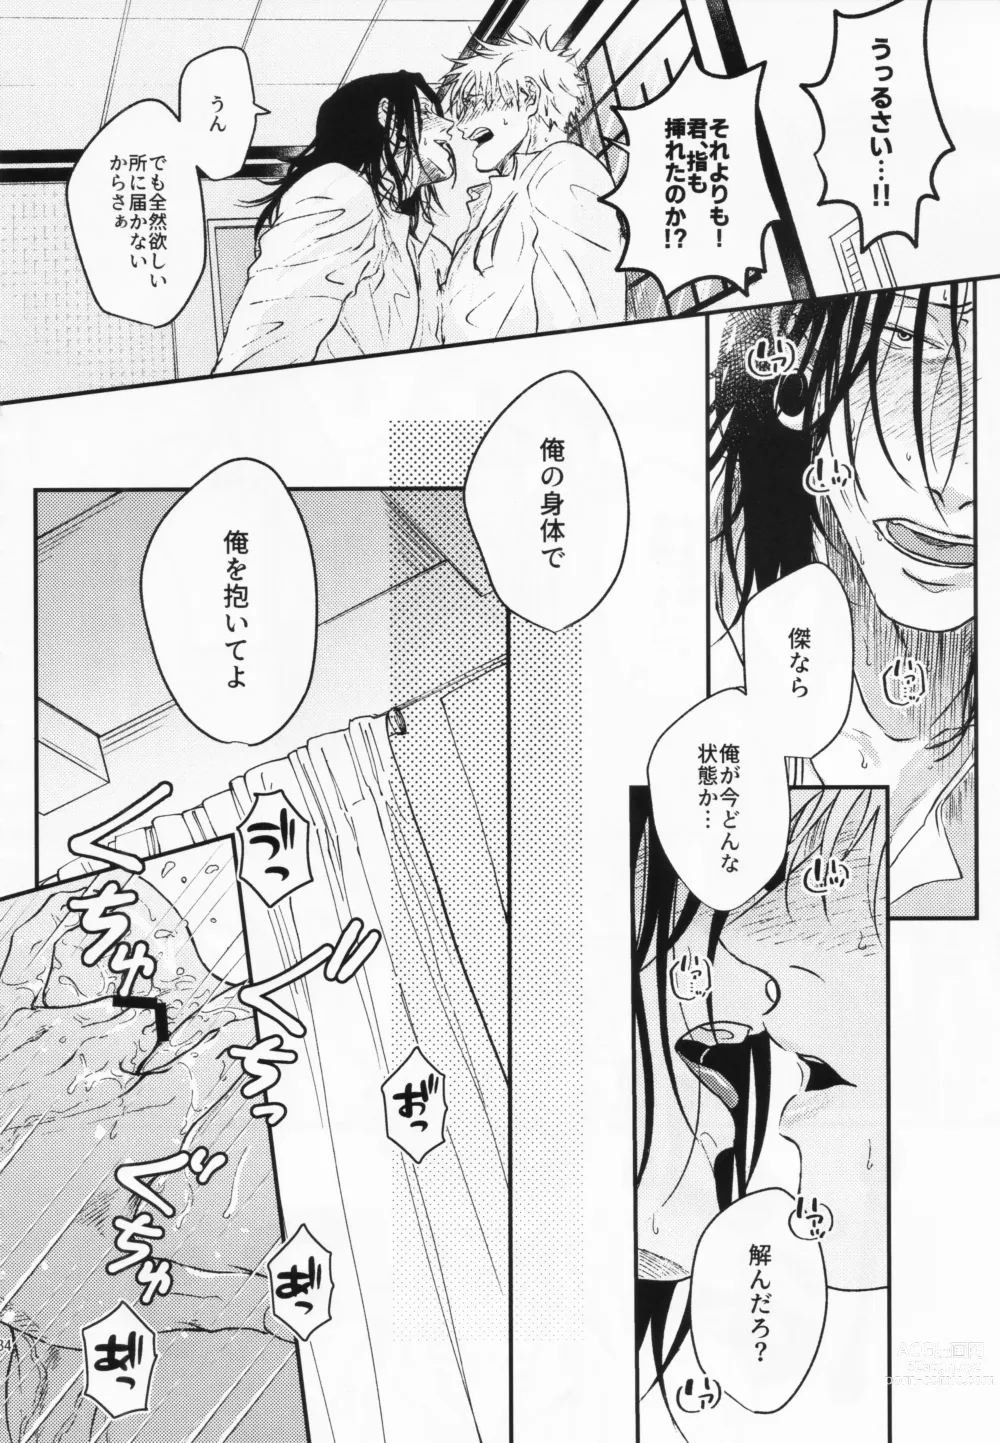 Page 31 of doujinshi Surussho.